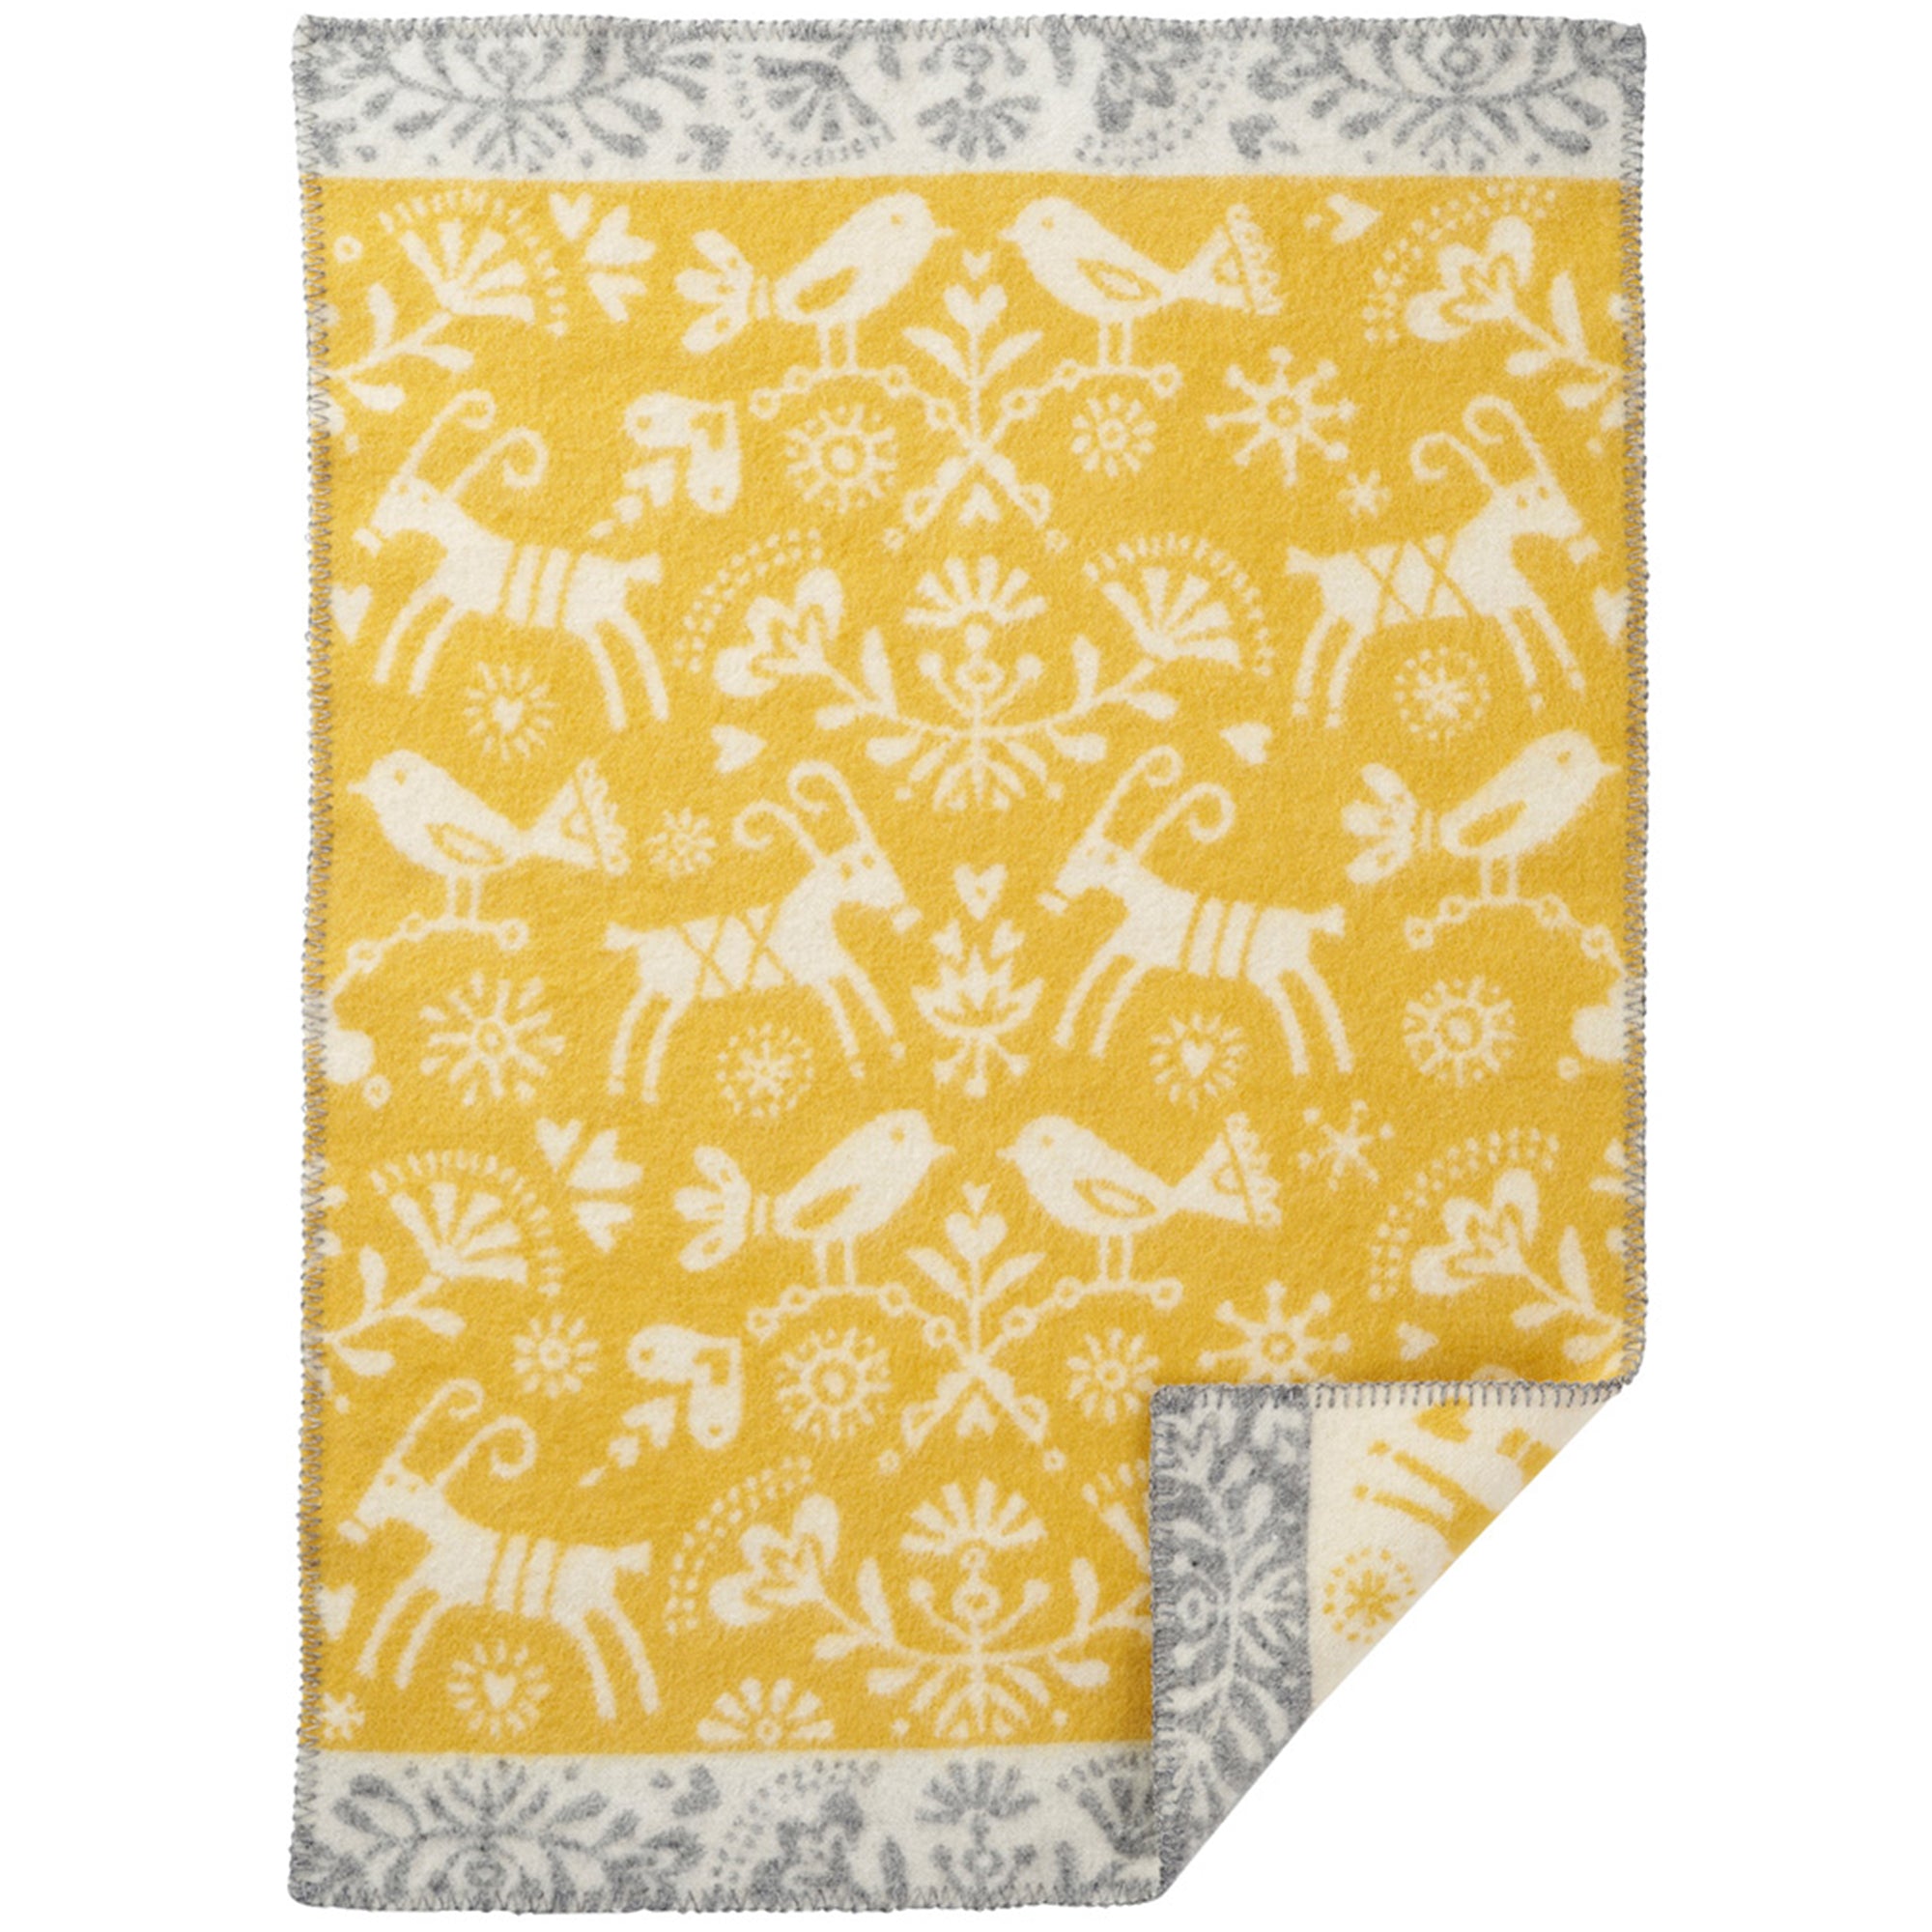 Joy Baby Yellow 65x90cm Eco Lambswool Blanket